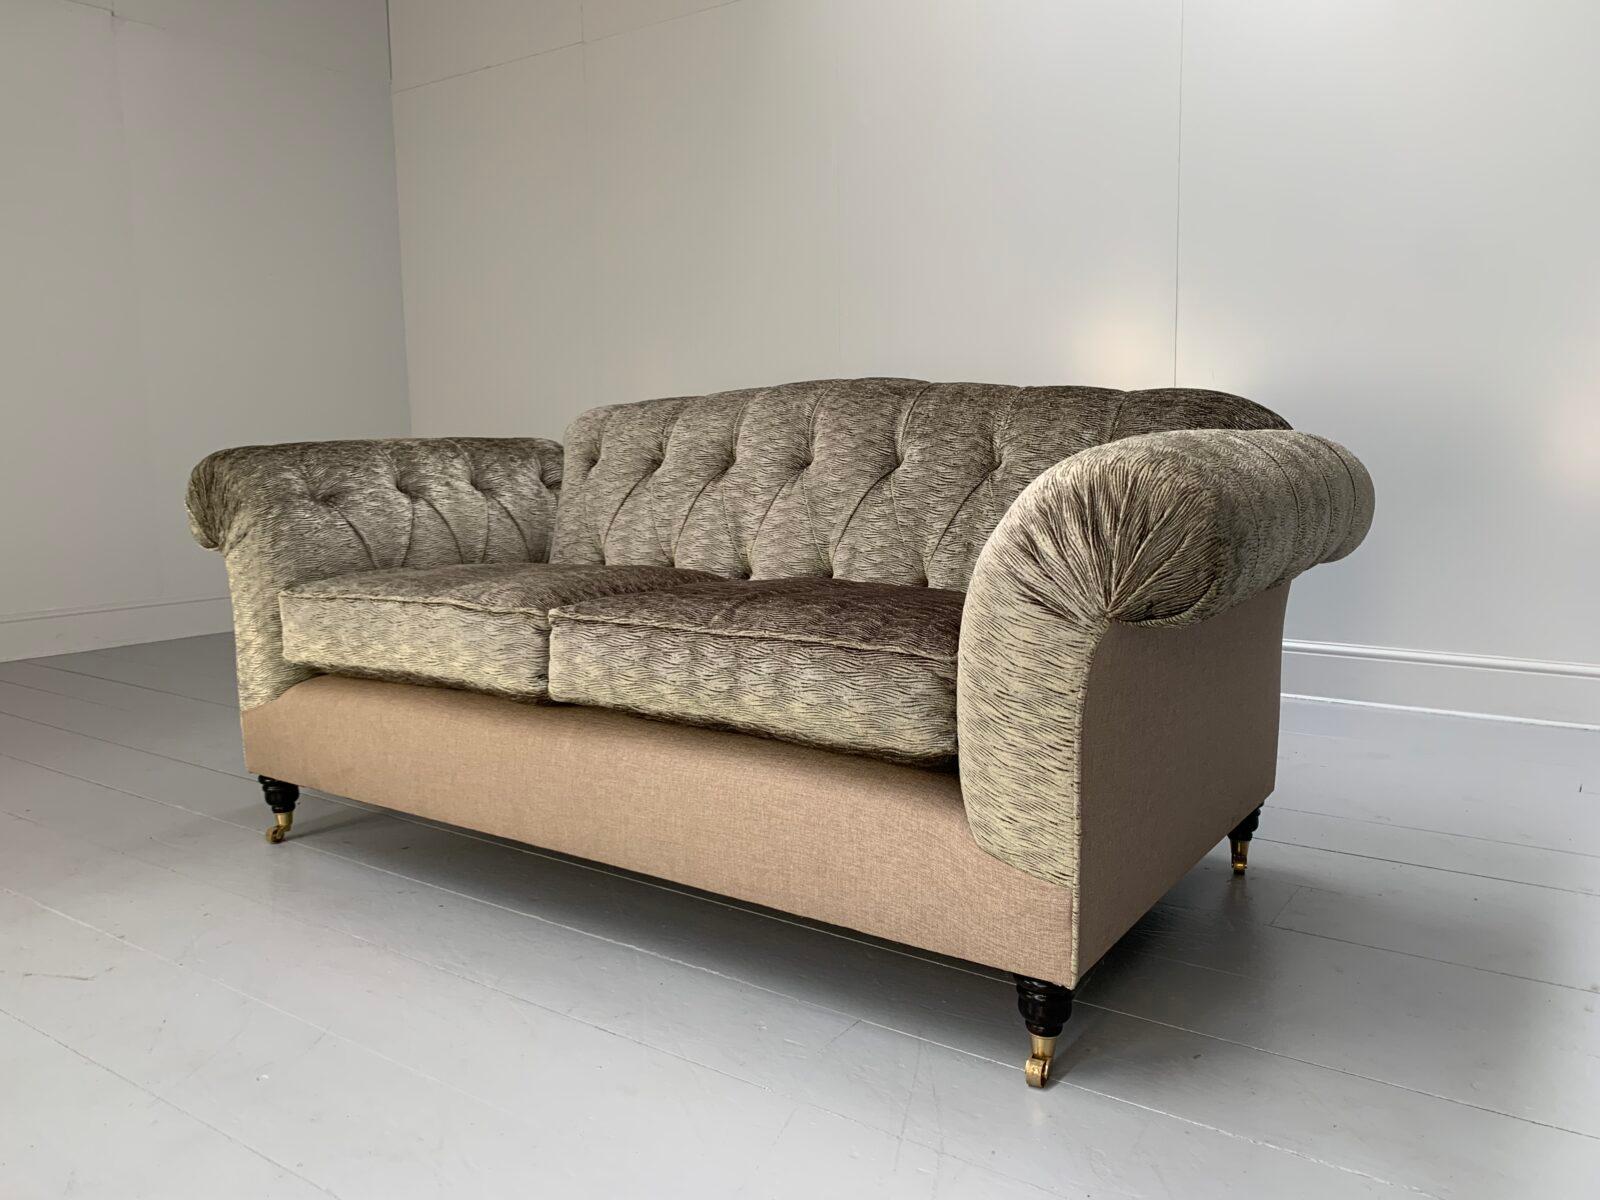 Bonjour les amis, et bienvenue à une nouvelle offre incontournable de Lord Browns Furniture, la première source de canapés et de chaises de qualité au Royaume-Uni.
À cette occasion, nous vous proposons l'un des meubles les plus étonnants et les plus